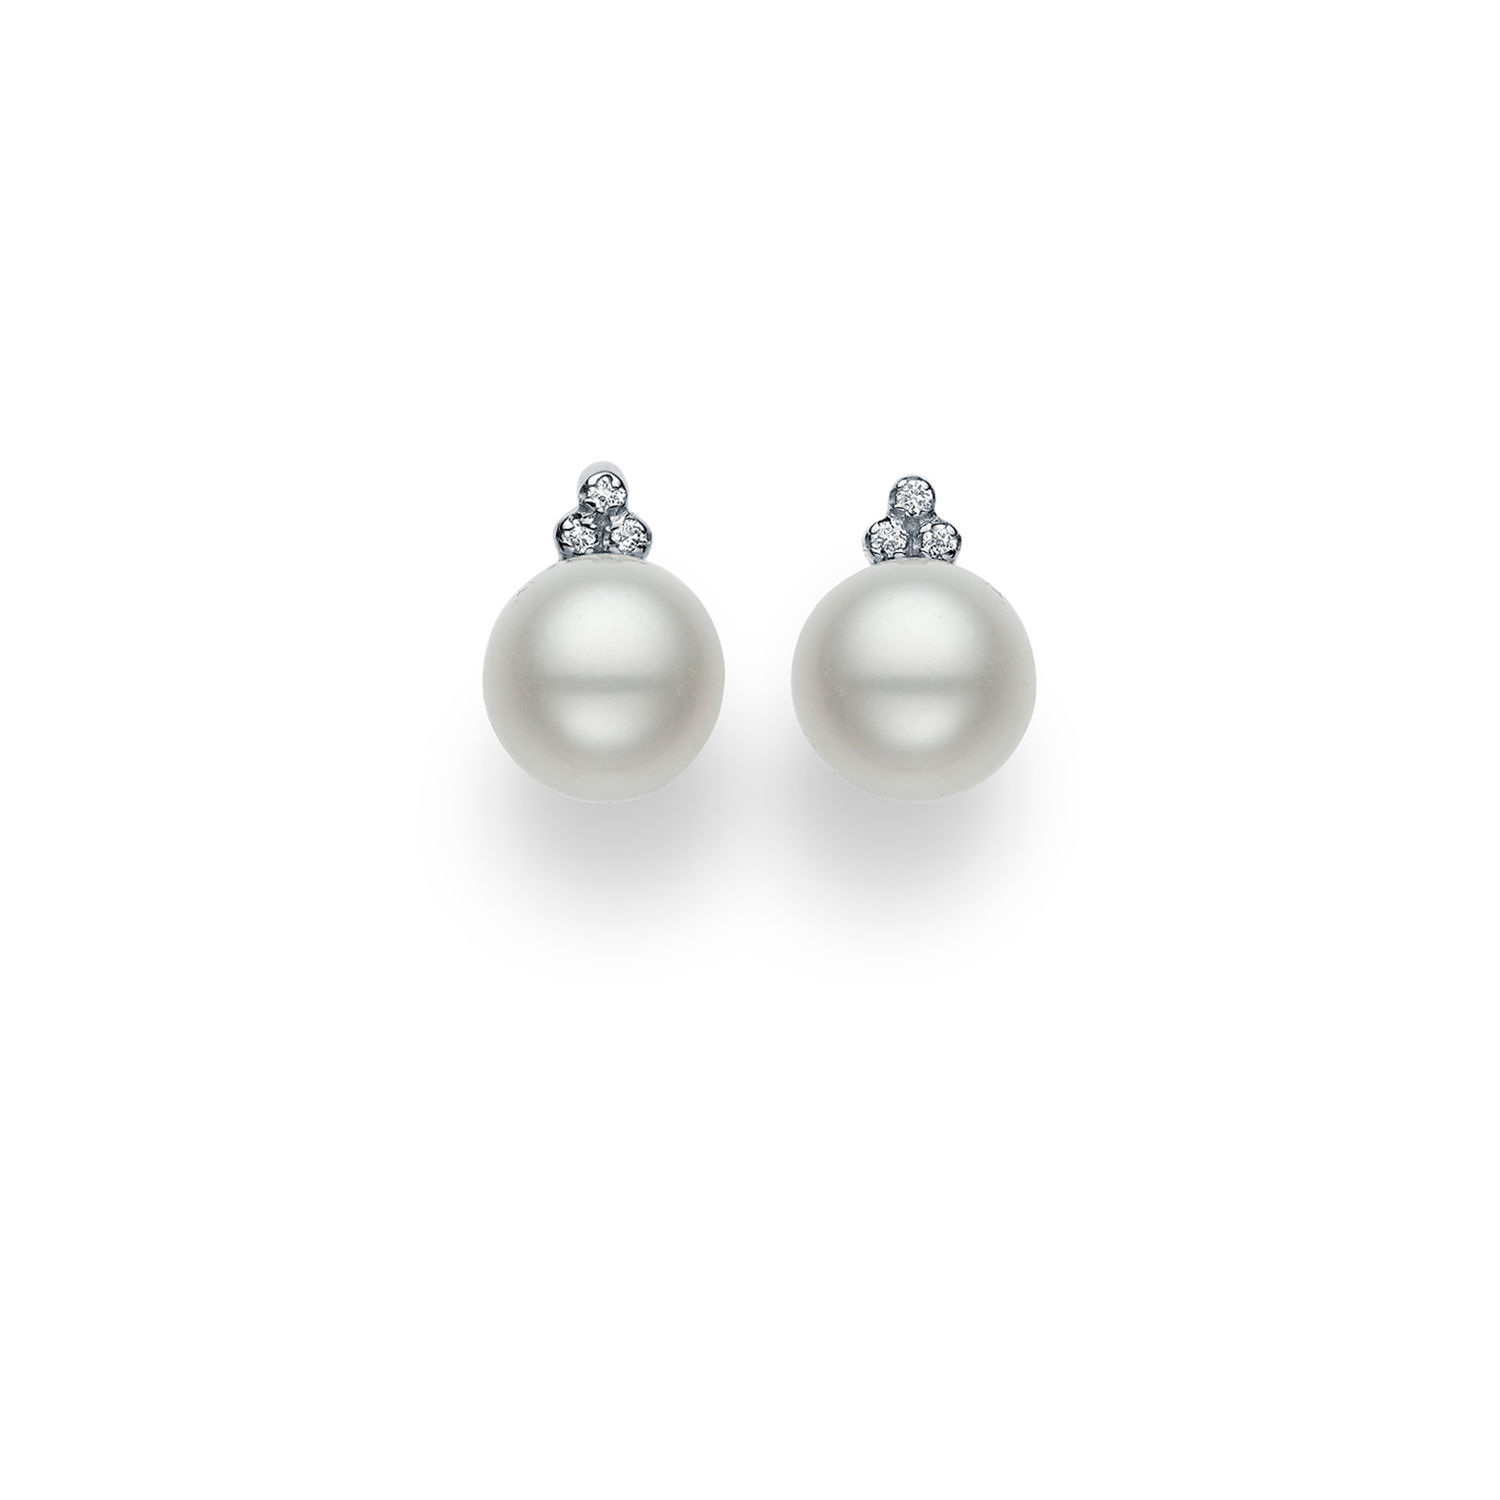 Σκουλαρίκια Pearls από λευκό χρυσό 18Κ με freshwater pearl και διαμάντια μπριγιάν